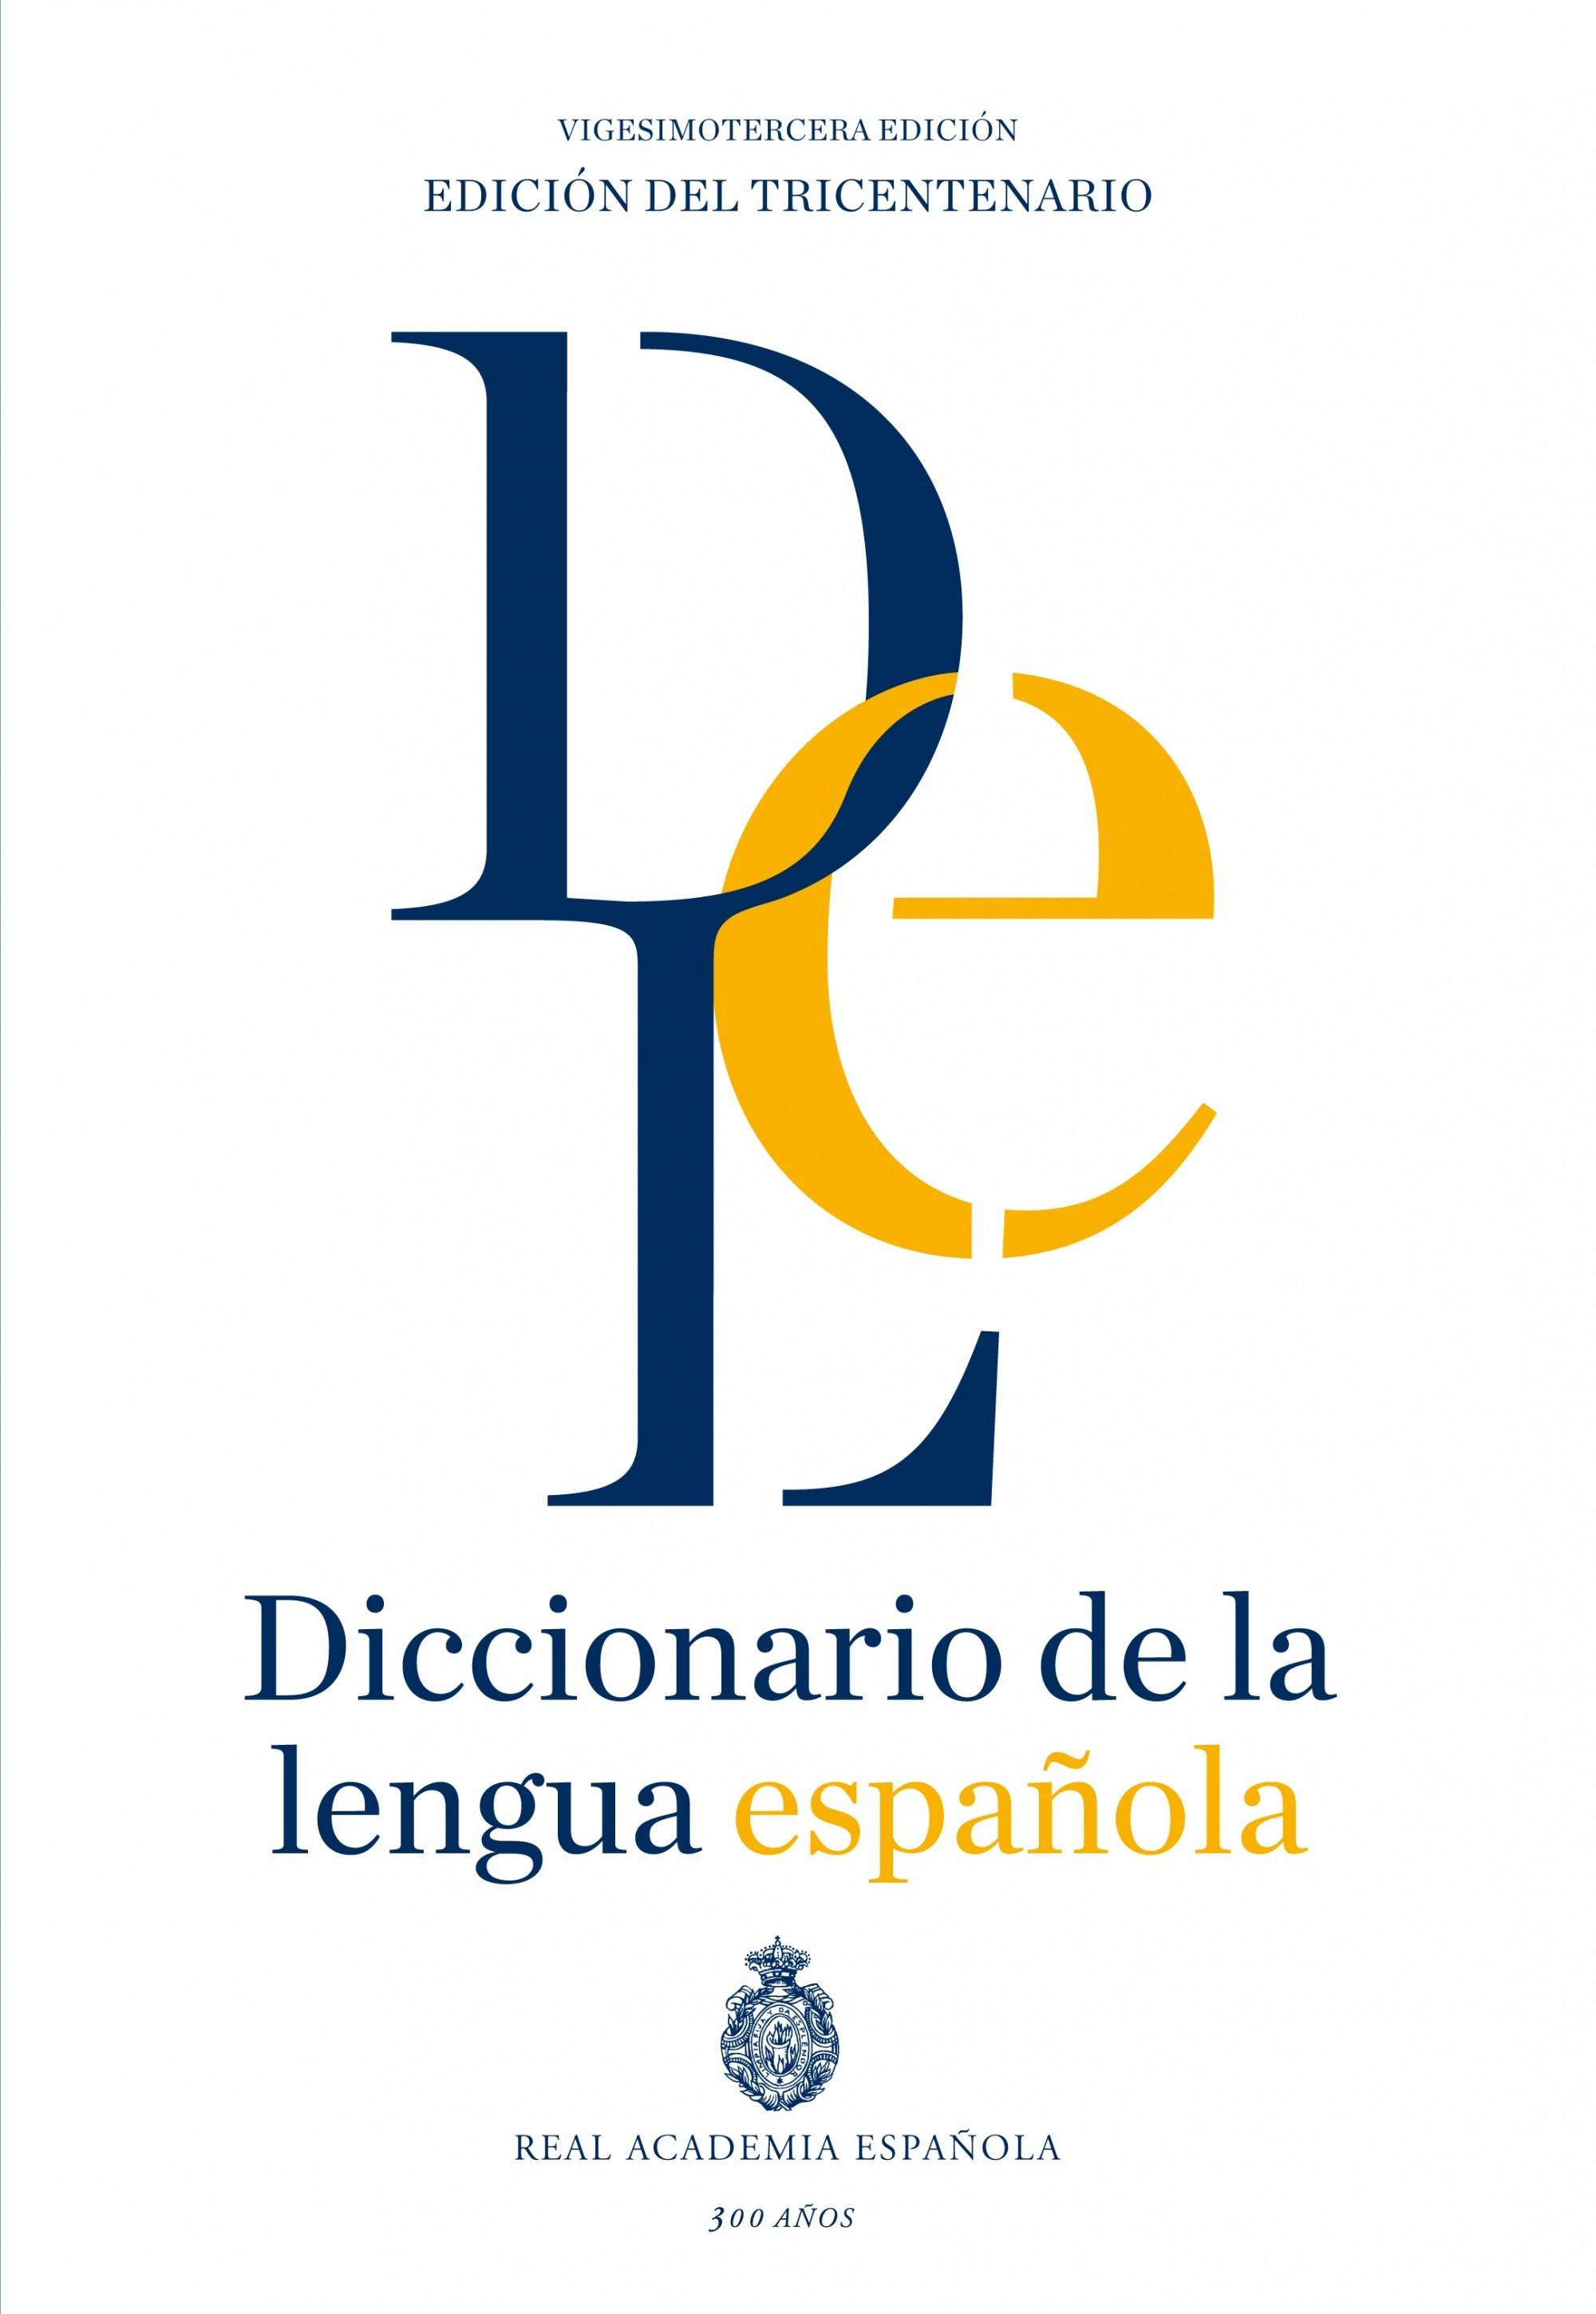 DICCIONARIO DE LA LENGUA ESPAÑOLA. "EDICIÓN DEL TRICENTENARIO". 